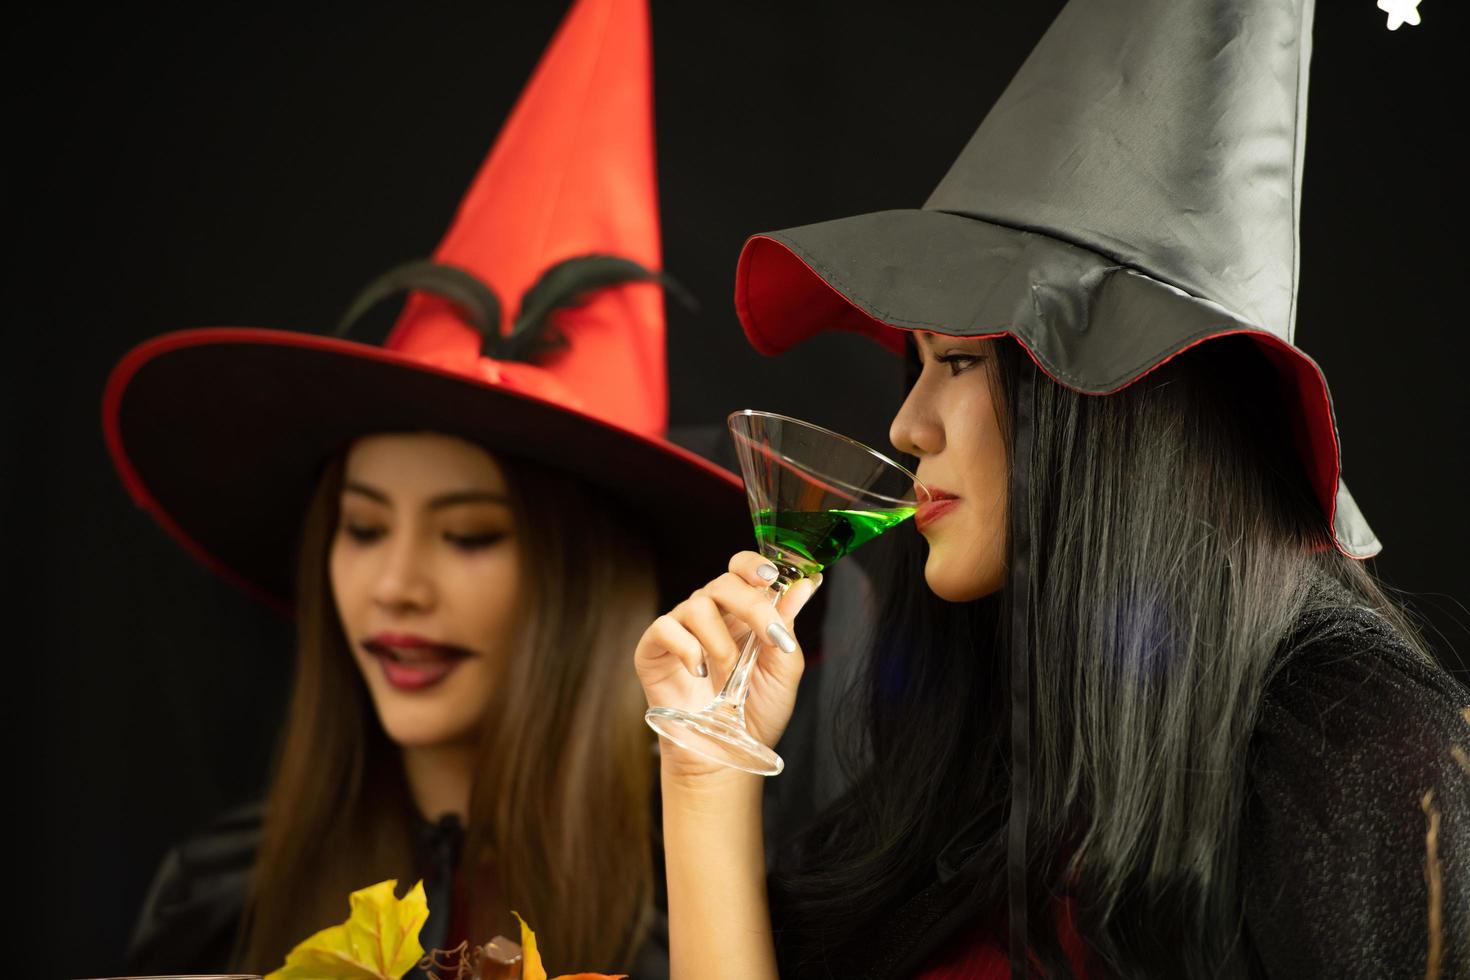 les jeunes asiatiques assistent à une fête d'halloween photo